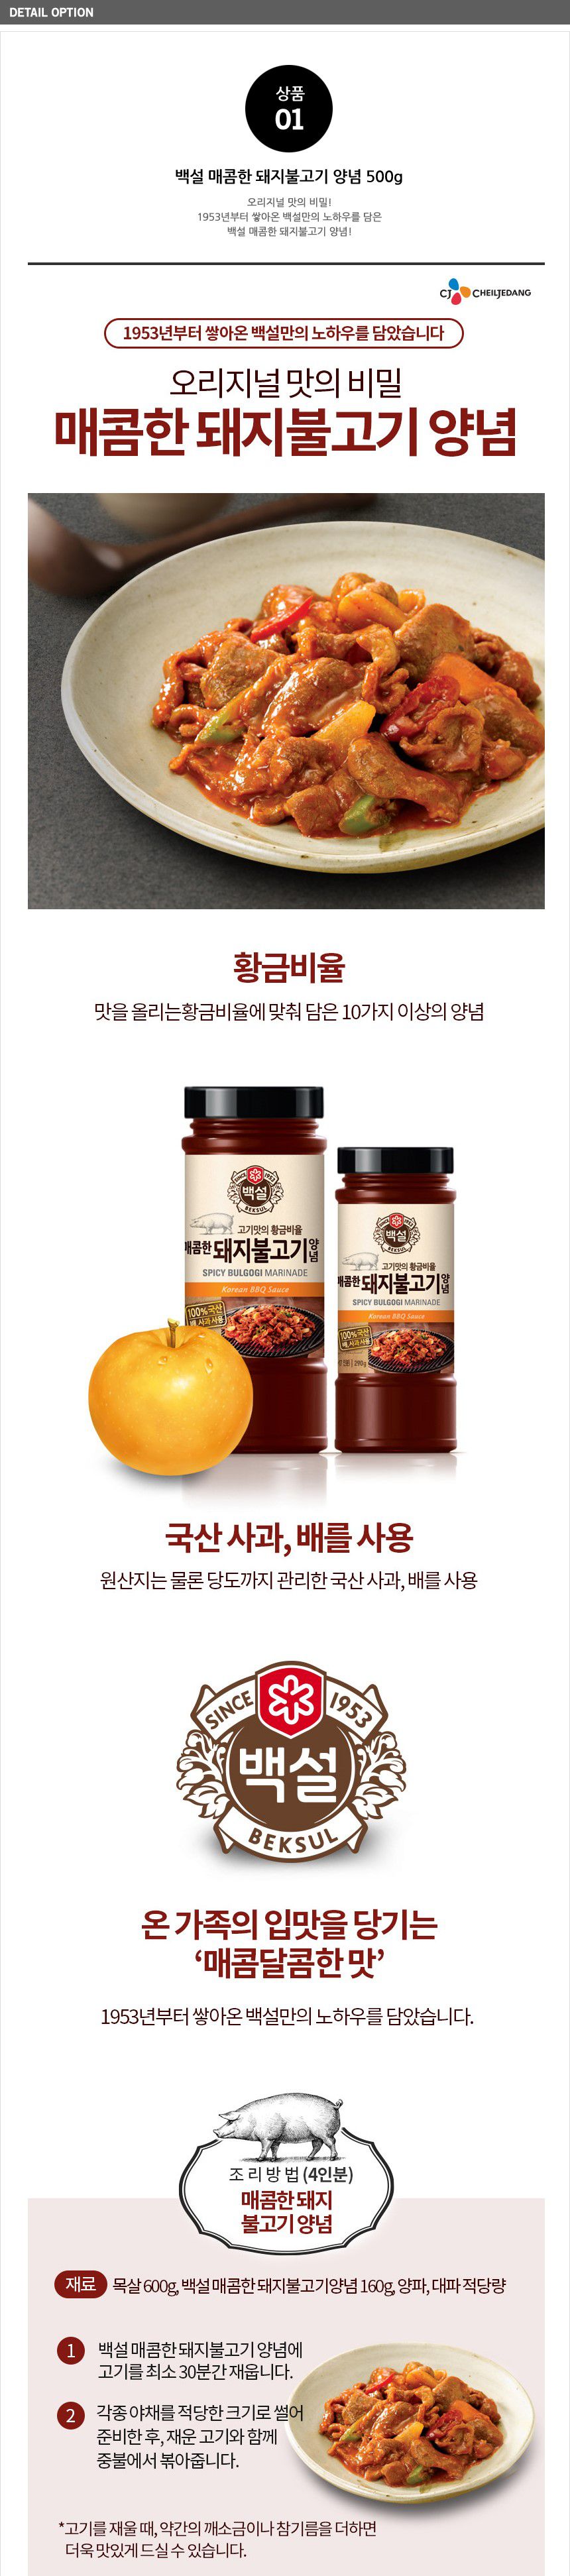 韓國食品-[CJ] 白雪 醃豬肉辣醬 500g